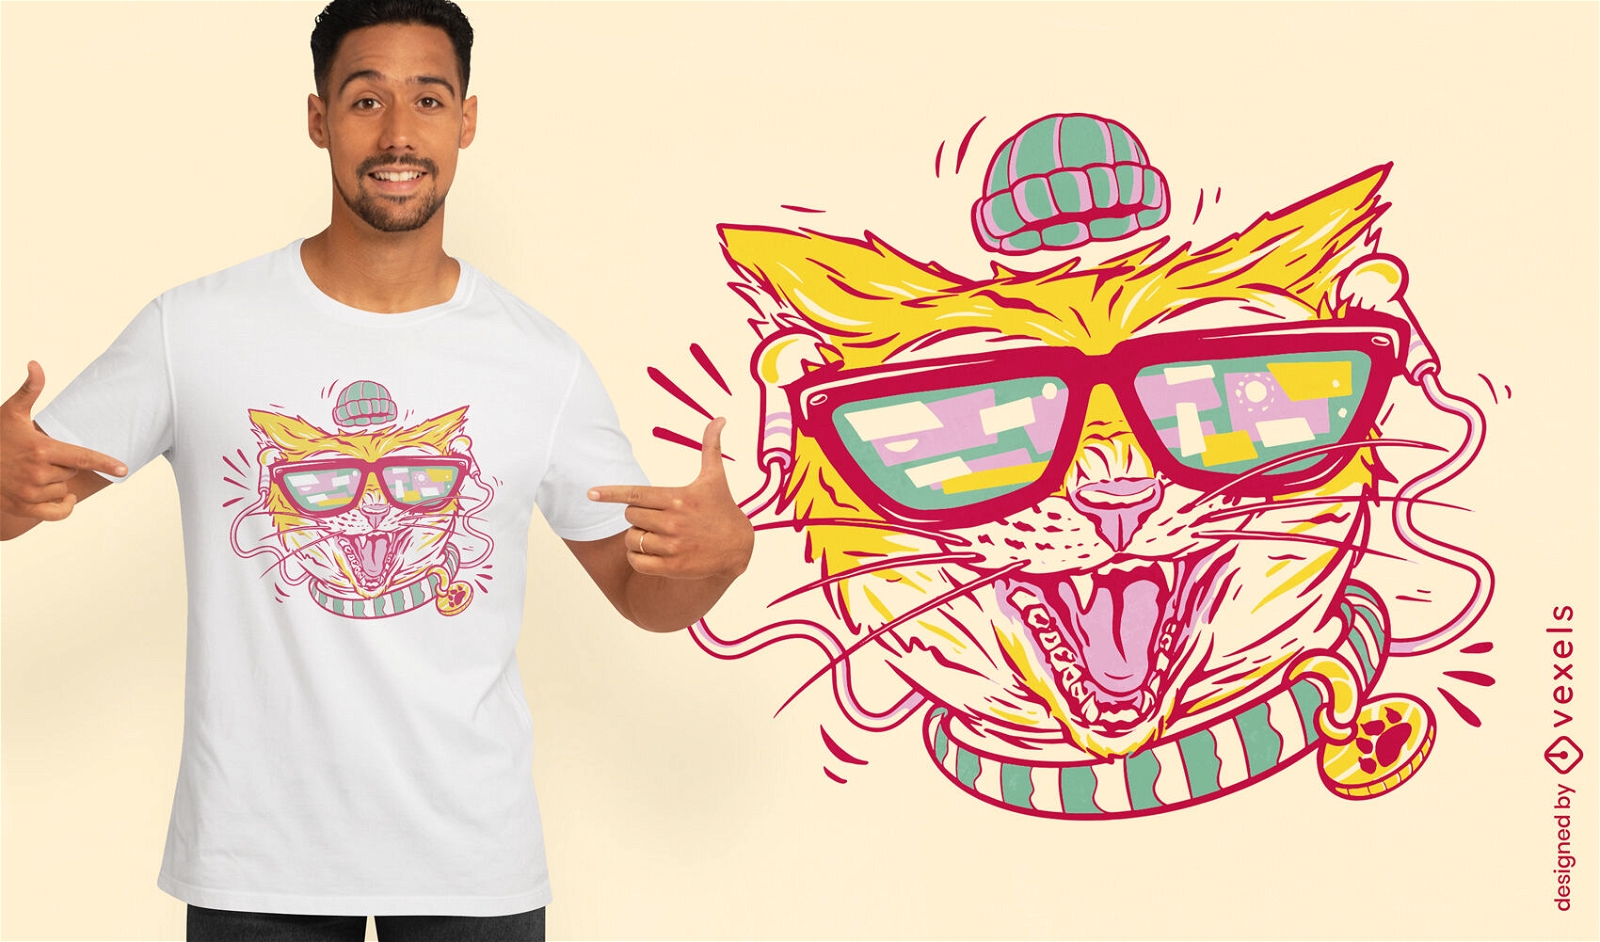 Hipster cat t-shirt design